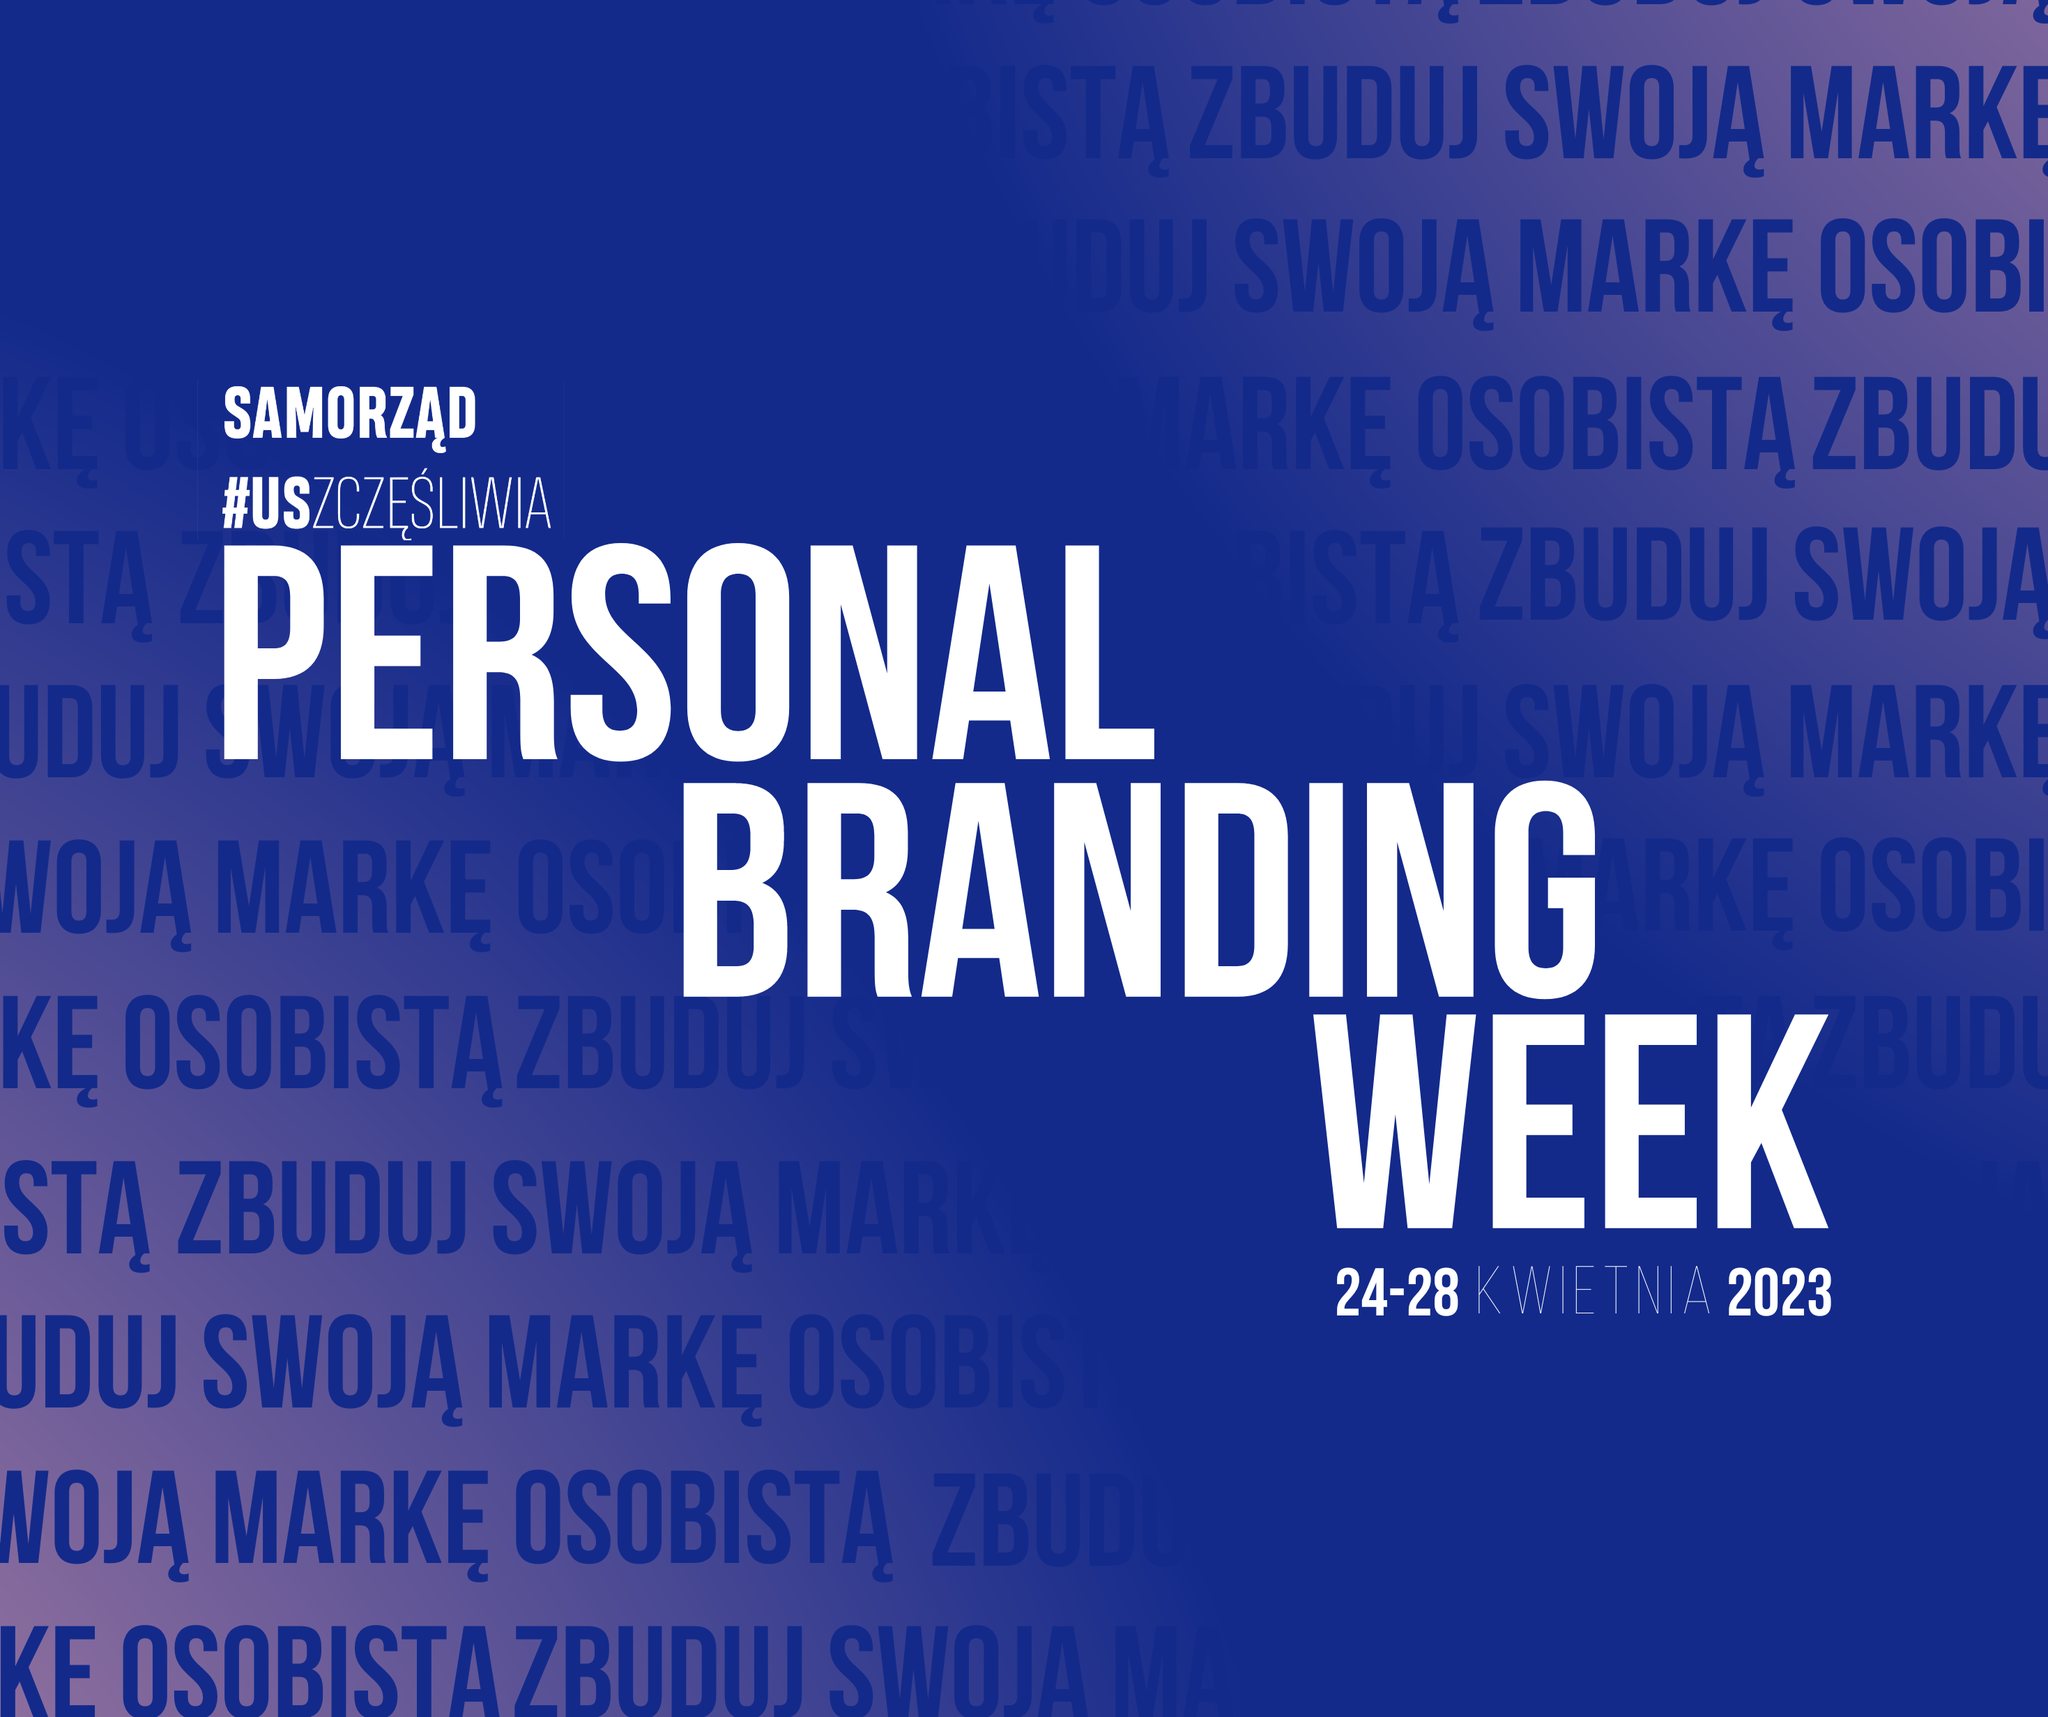 Personal Branding Week